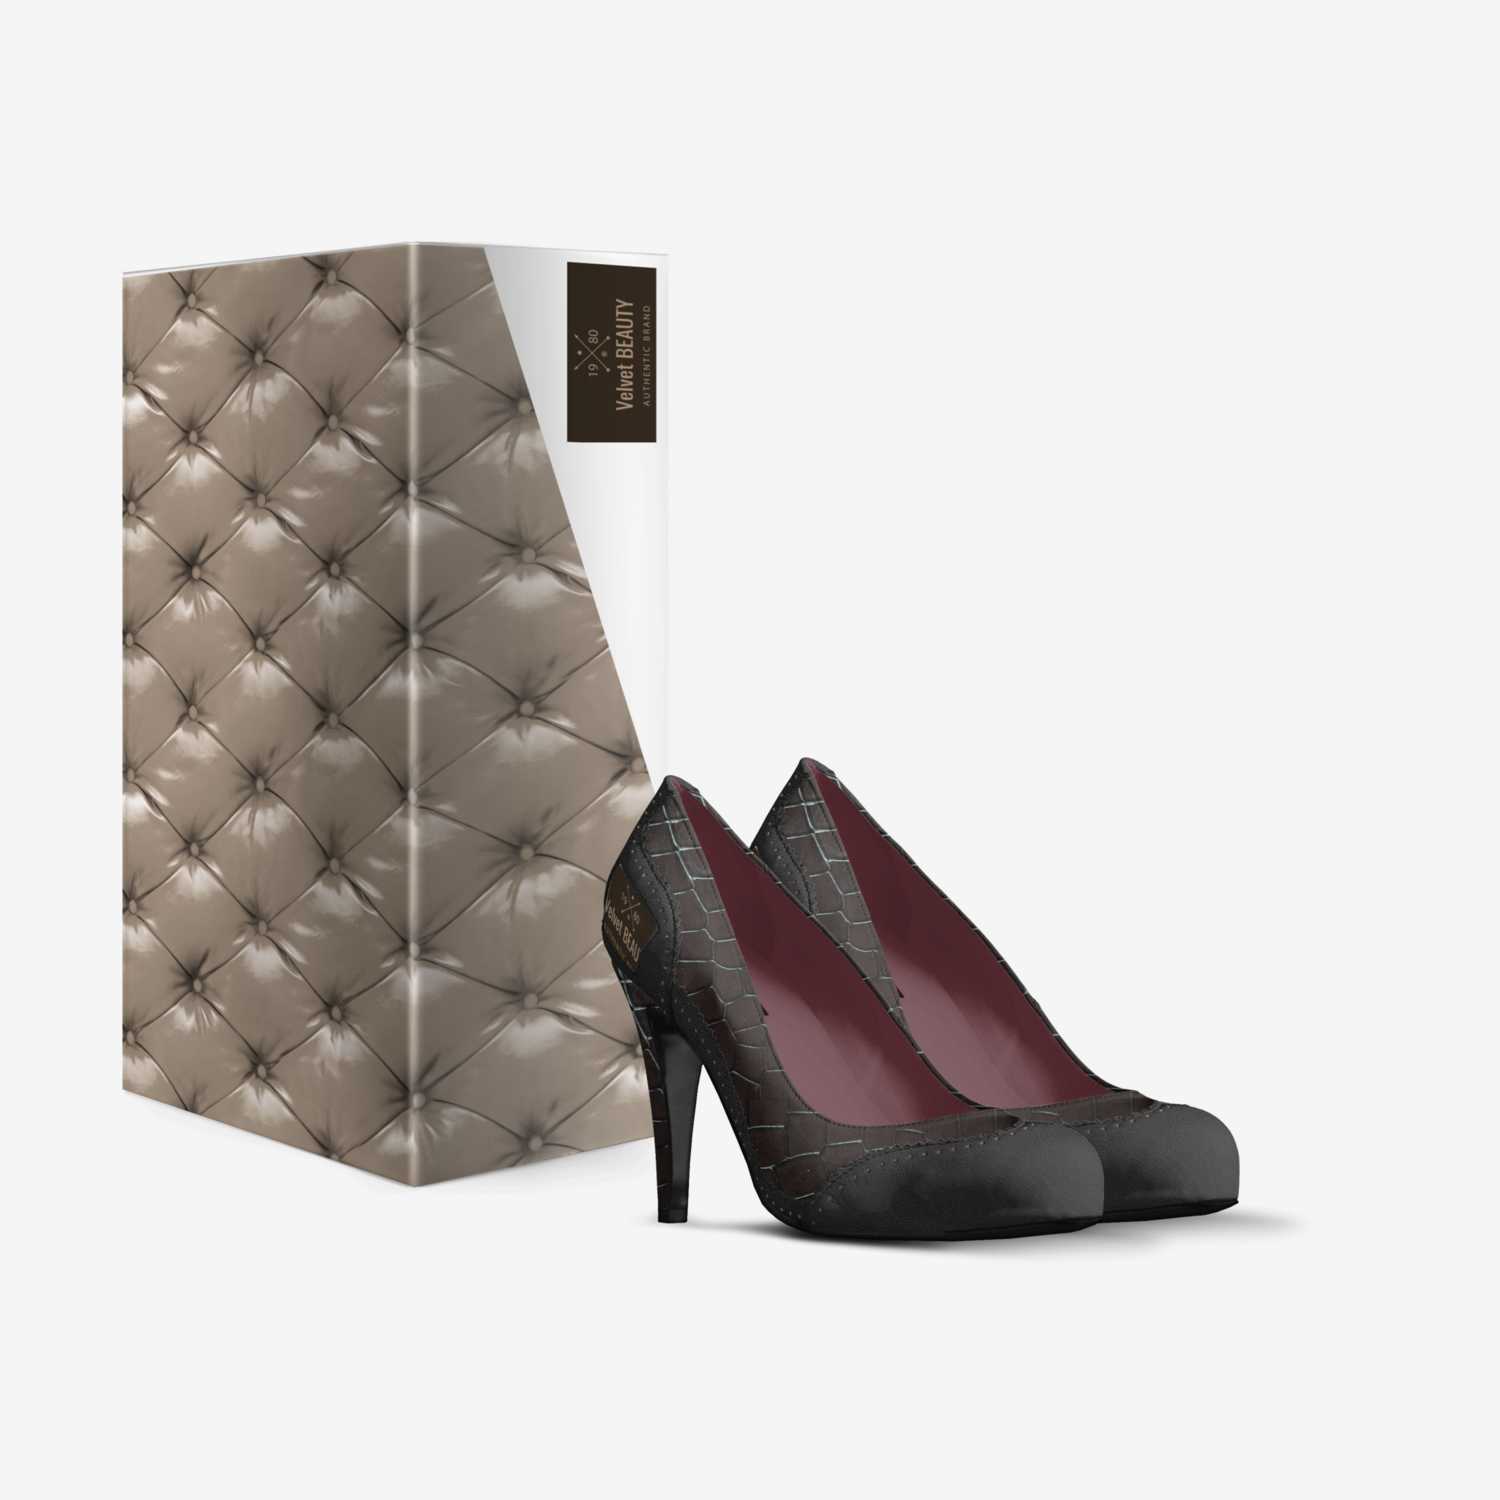 Velvet BEAUTY custom made in Italy shoes by Shantae Esannason | Box view